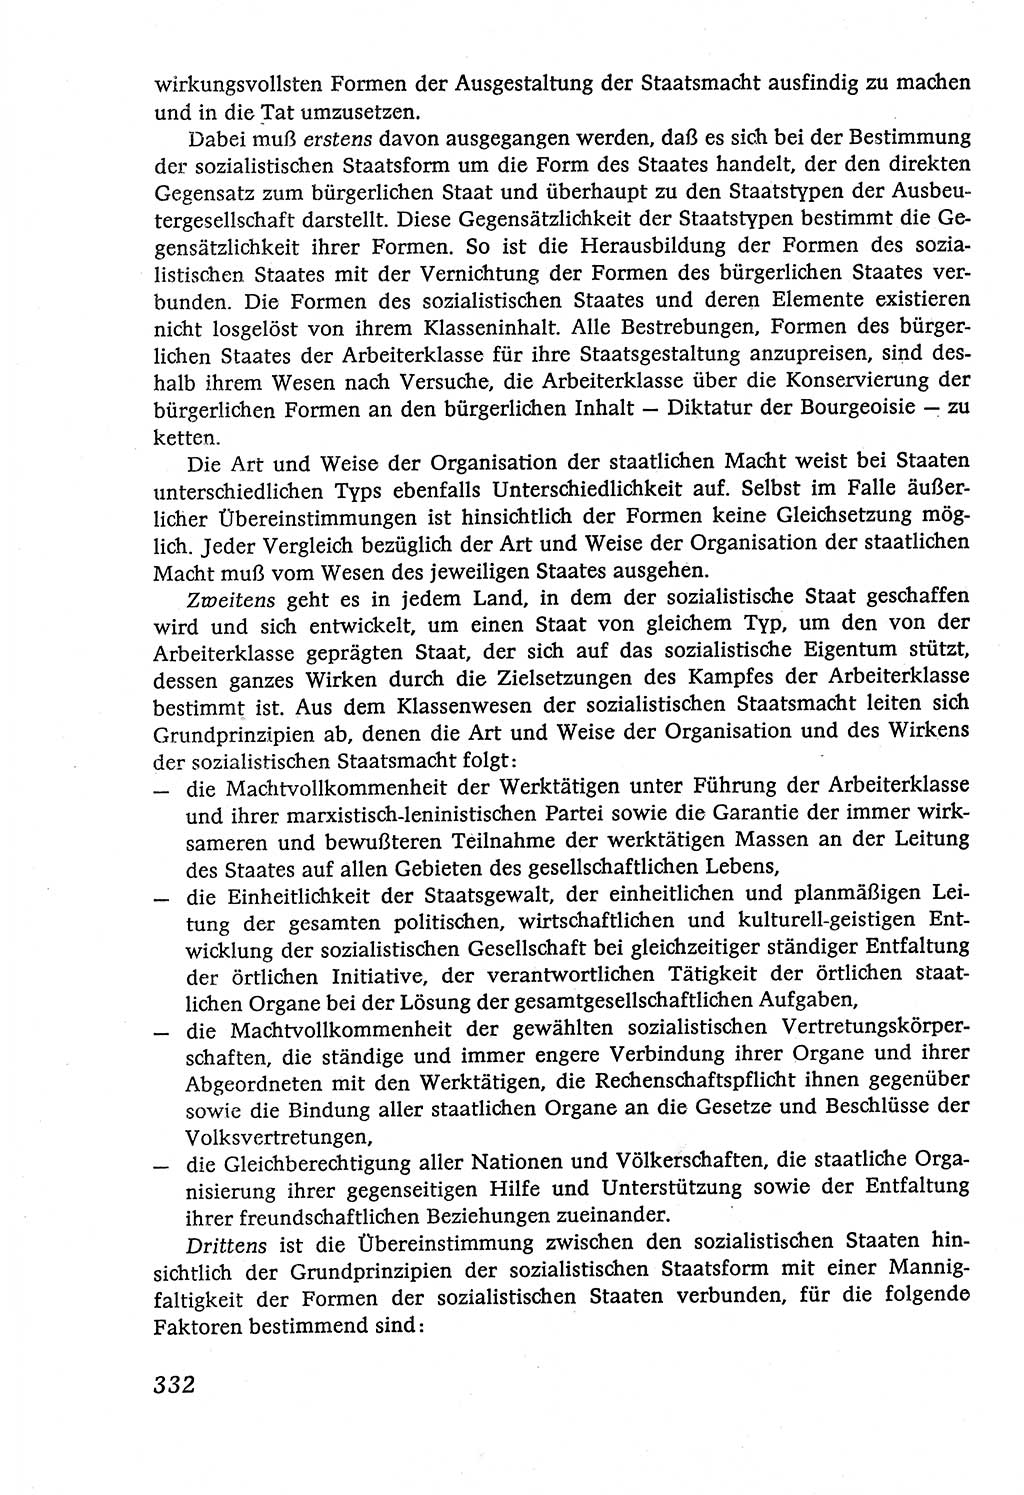 Marxistisch-leninistische (ML) Staats- und Rechtstheorie [Deutsche Demokratische Republik (DDR)], Lehrbuch 1980, Seite 332 (ML St.-R.-Th. DDR Lb. 1980, S. 332)